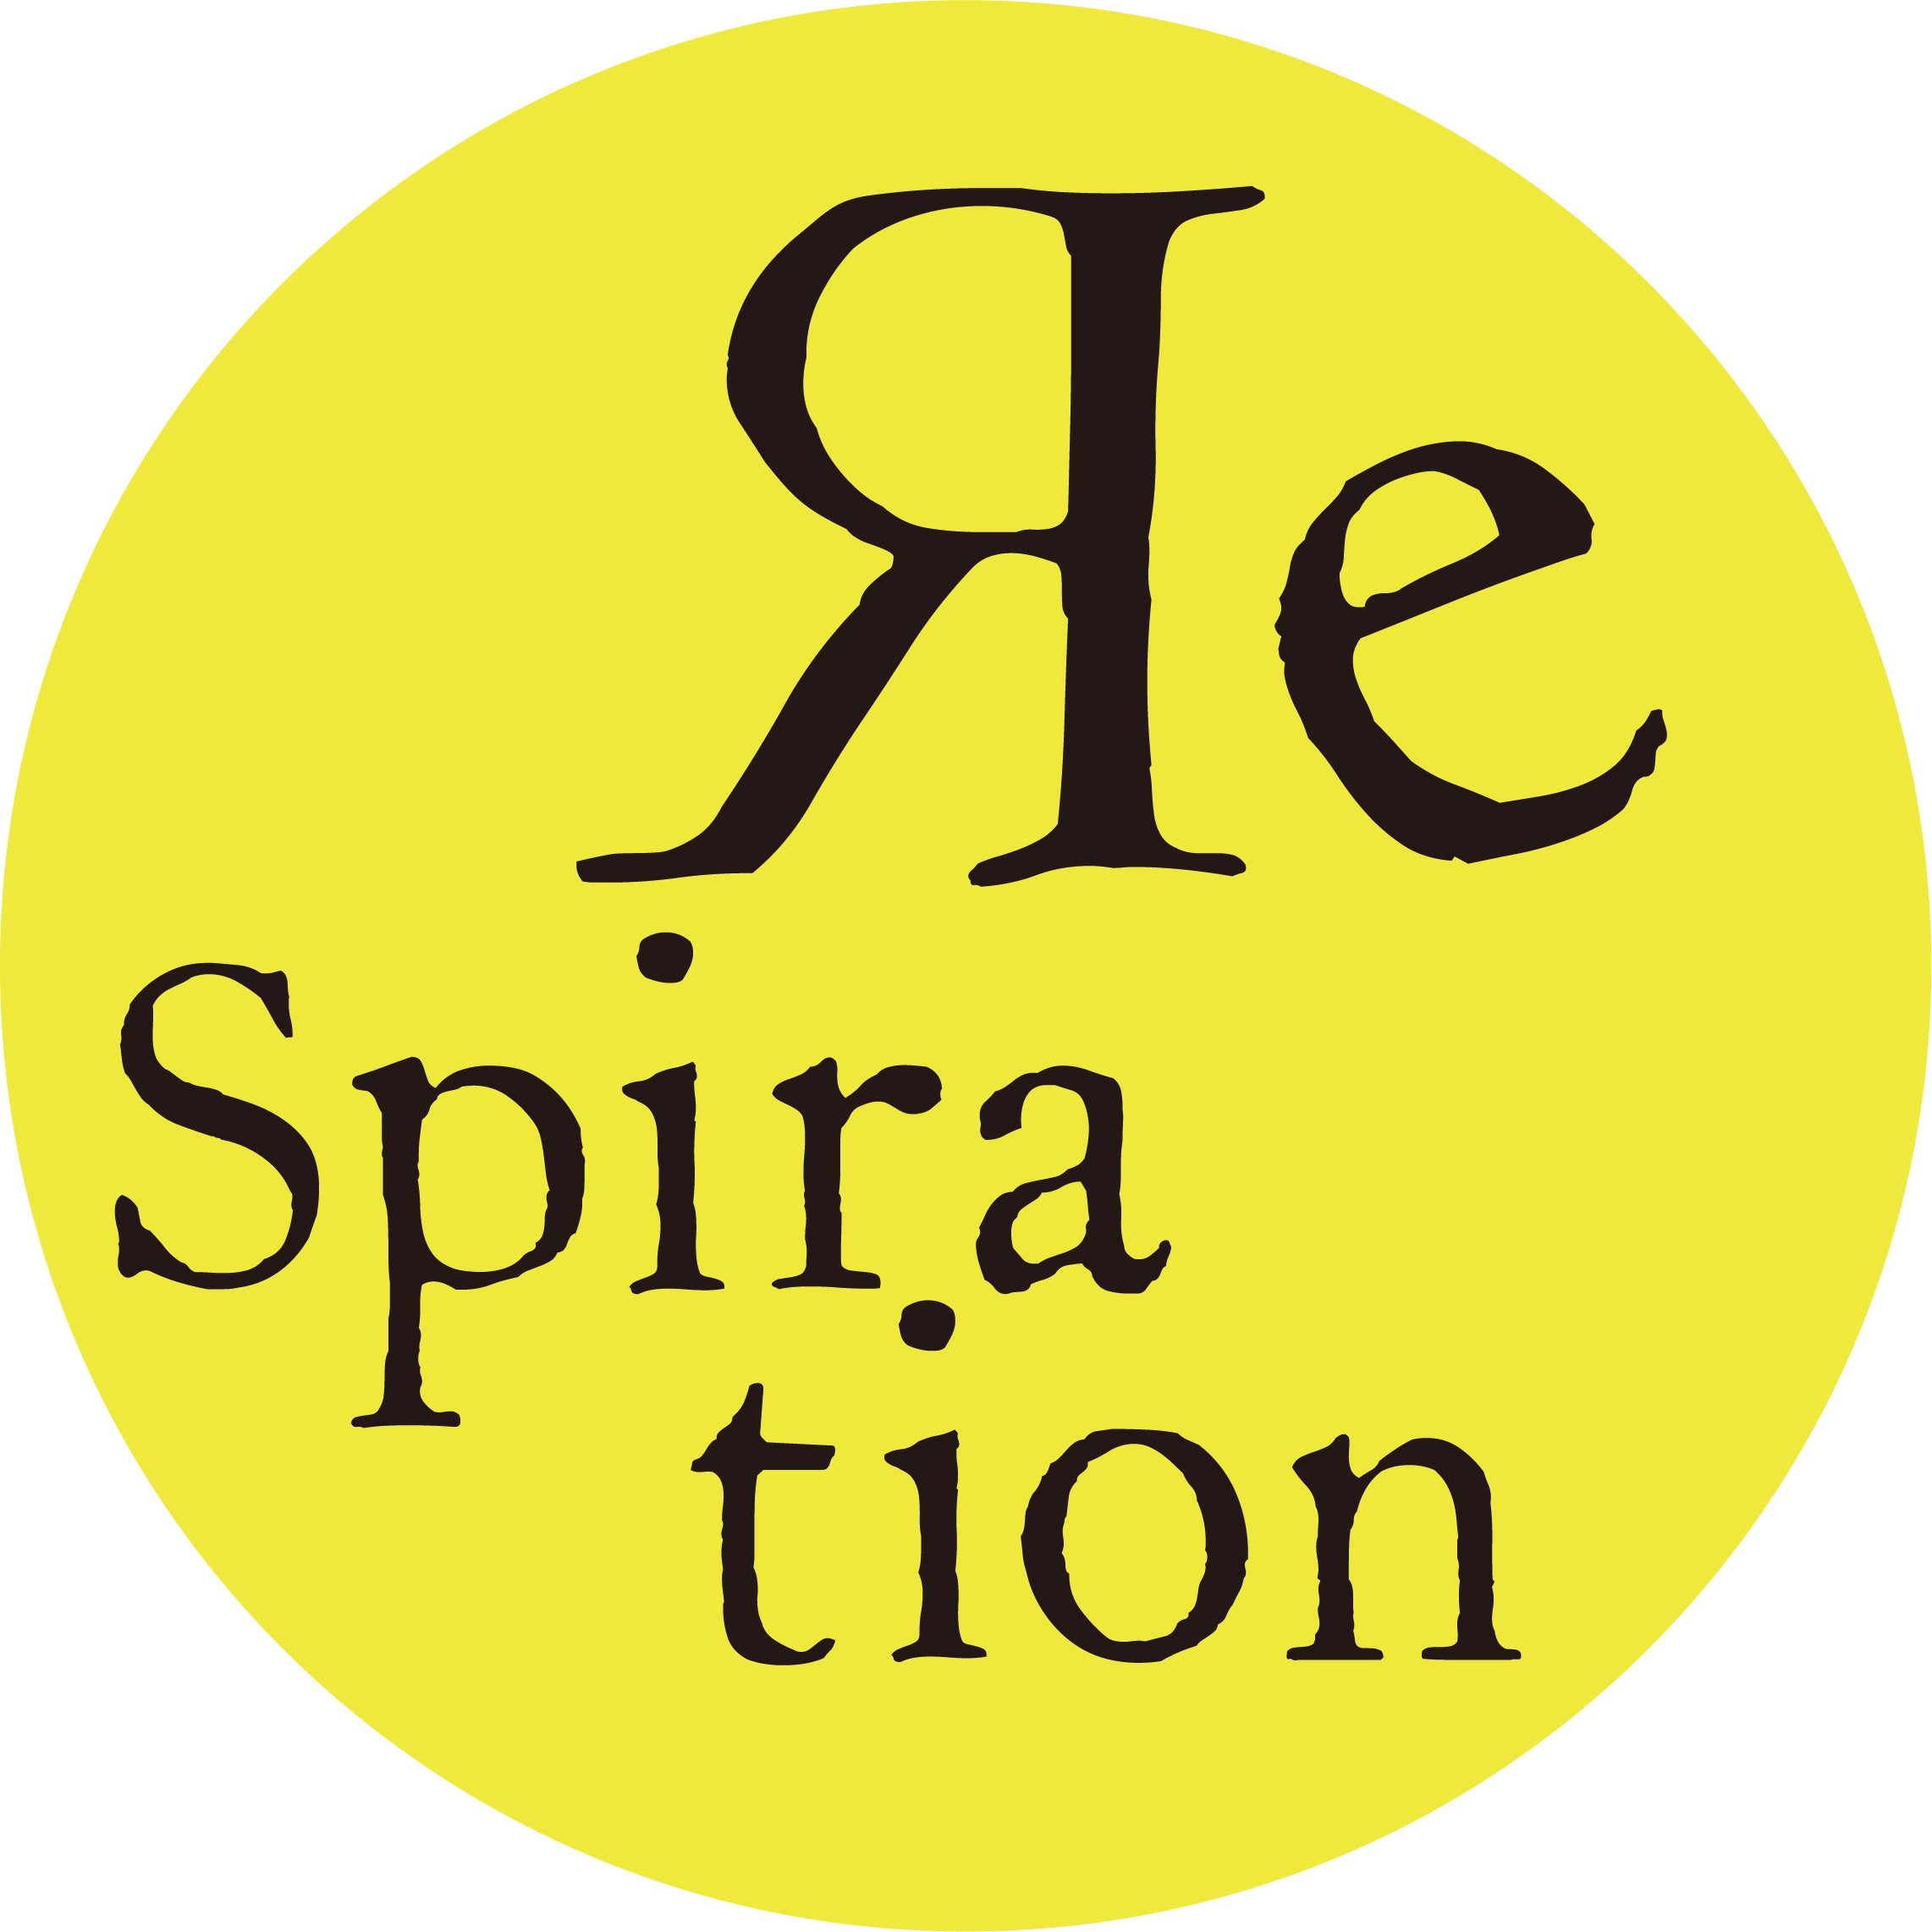 実験と共創により生まれるボーダーレスなアートイベント『ЯeSpiration』のアーカイブBOOKの限定予約販売を開始